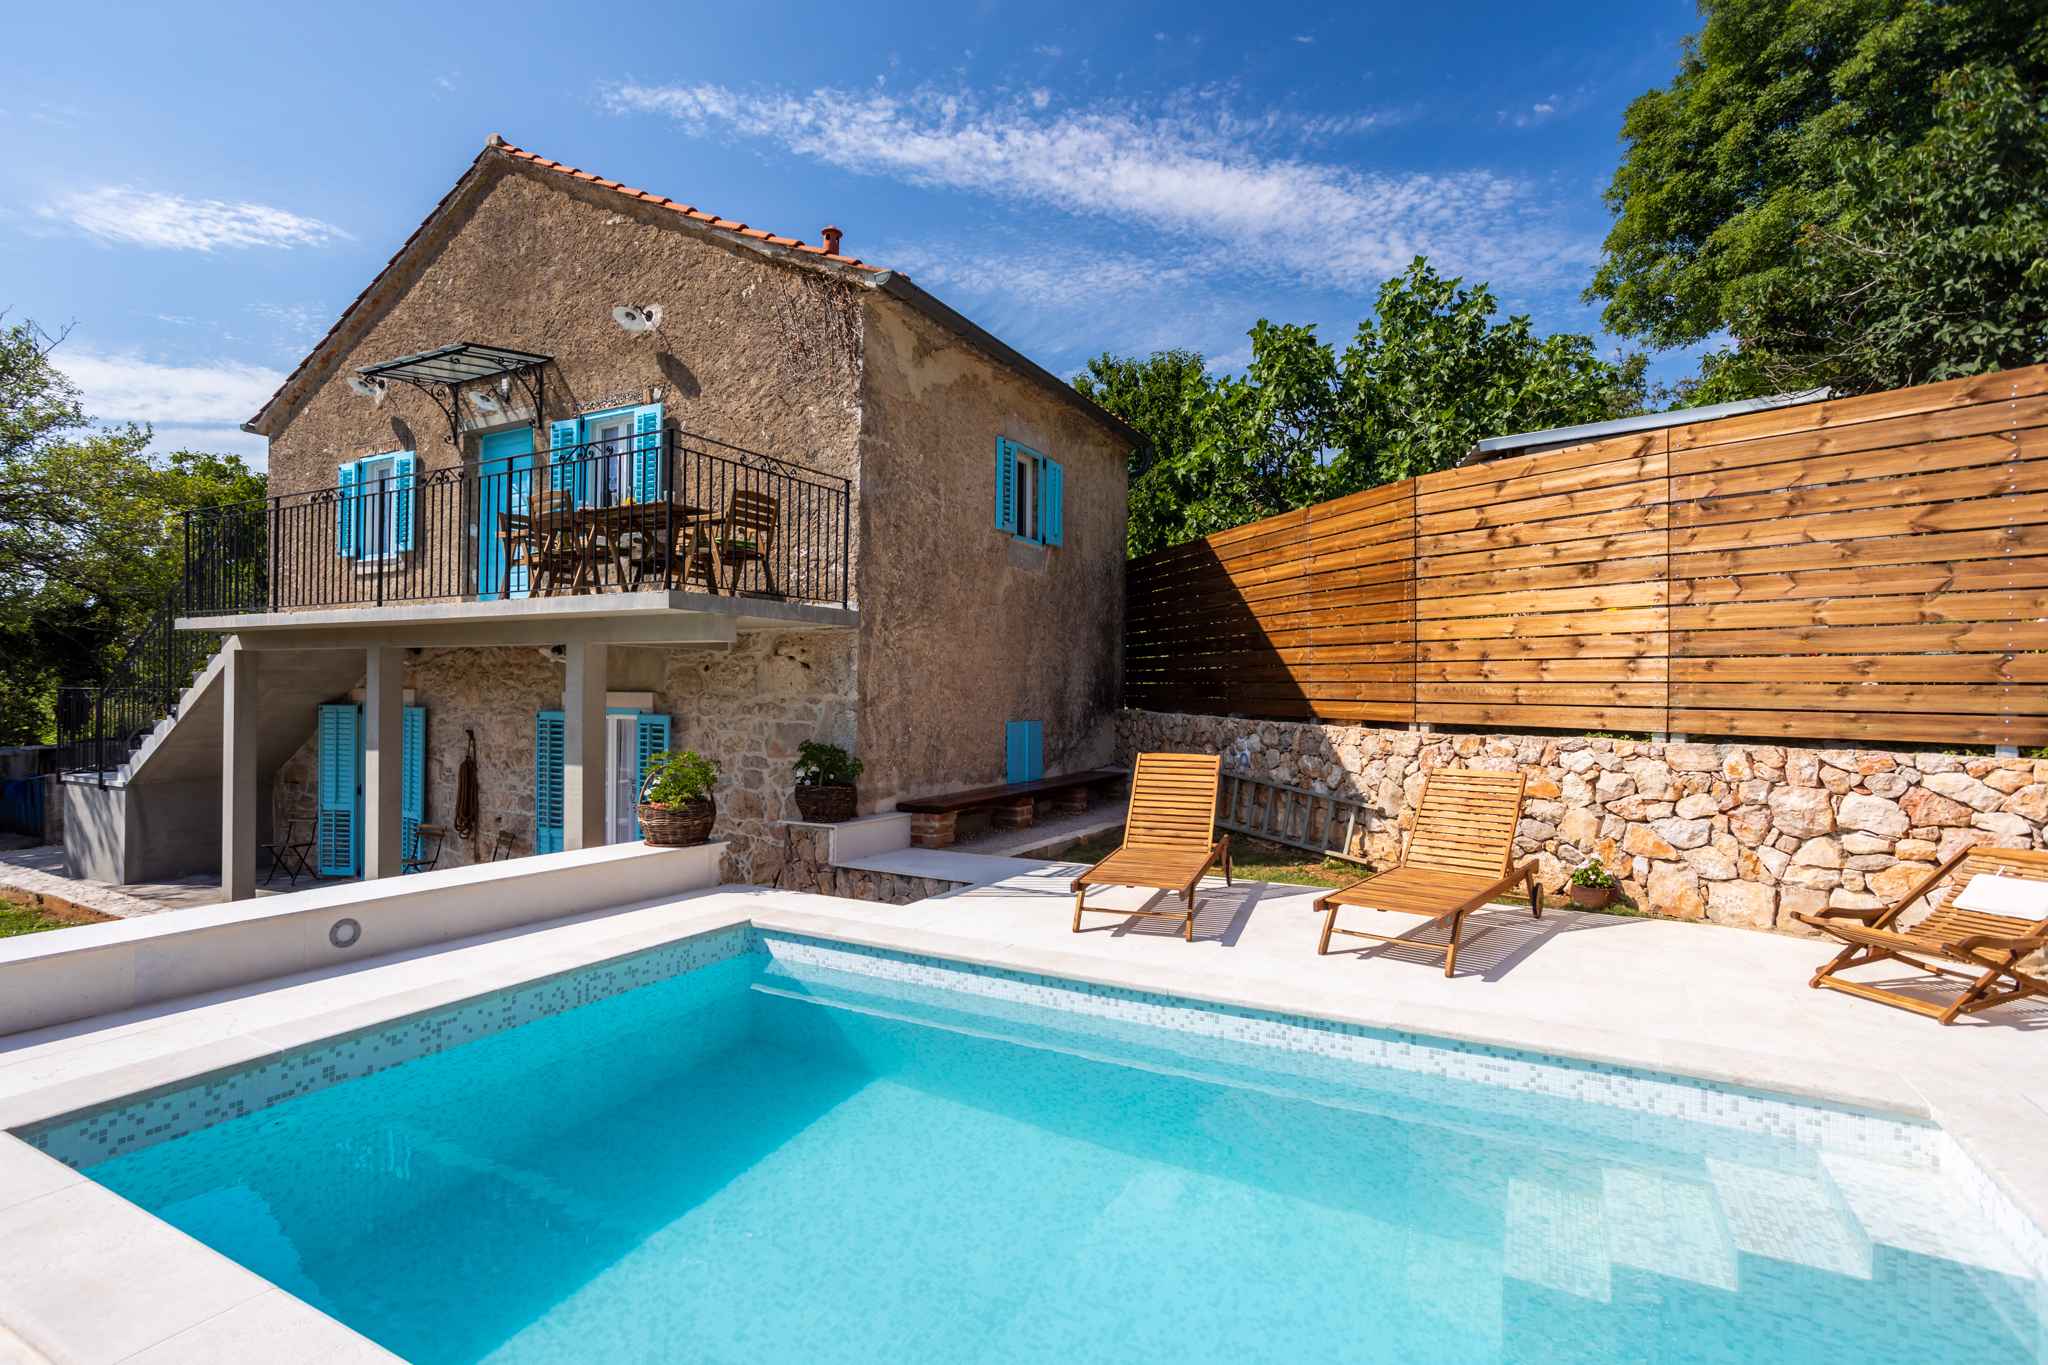 Ferienhaus mit Pool, Klimaanlage und Internet Ferienhaus in Kroatien